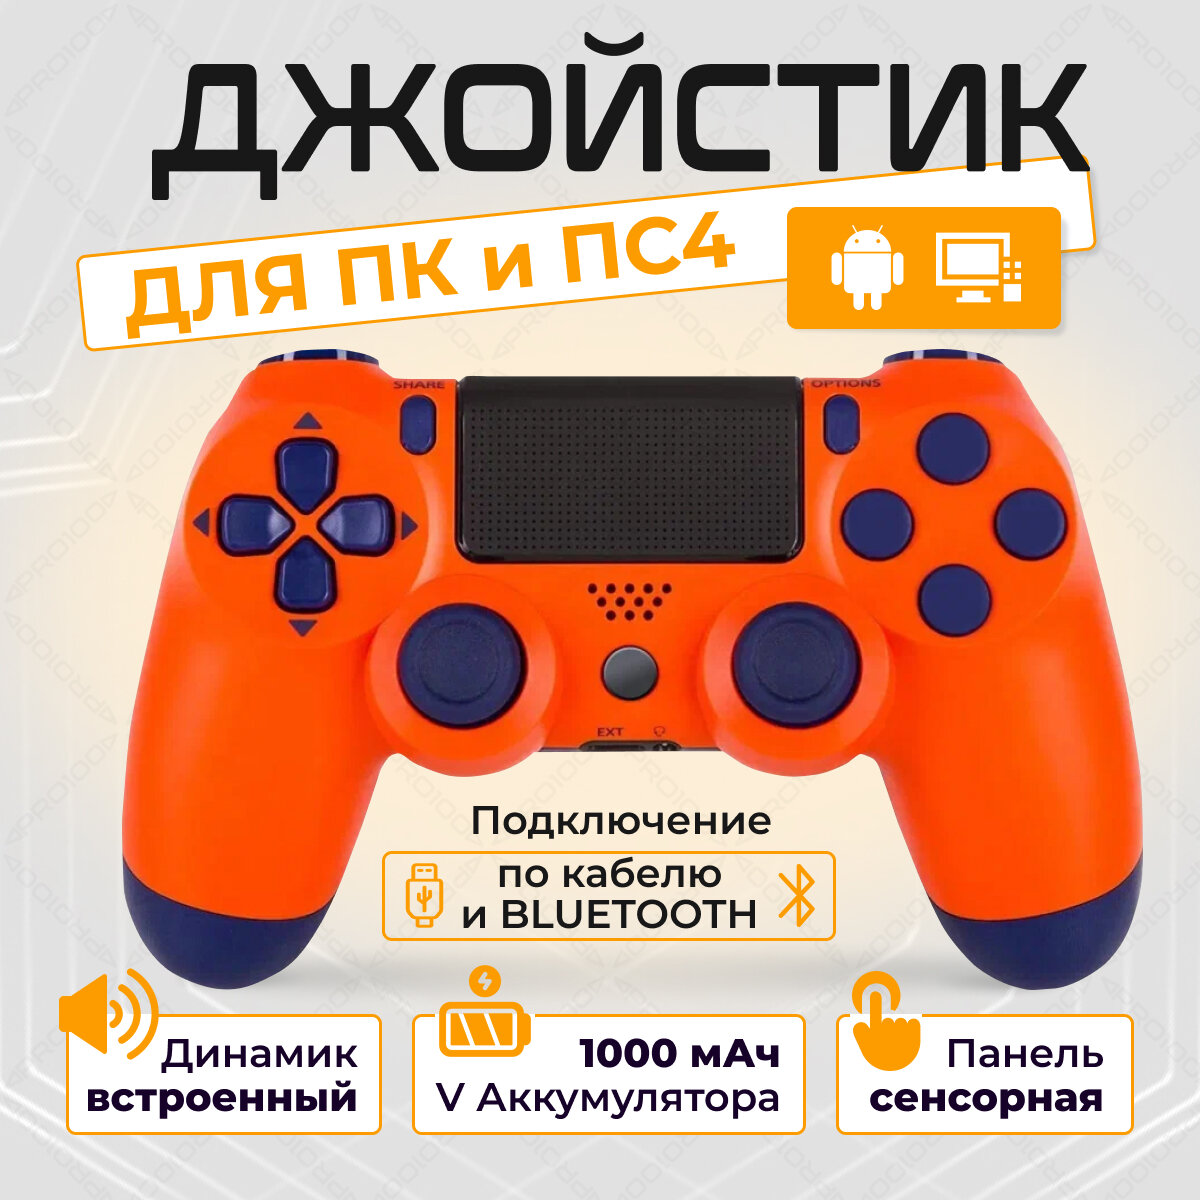 Беспроводной геймпад для PS4 и ПК / Джойстик Bluetooth для Playstation 4, Apple (IPhone, IPad), Androind, ПК - оранжевый